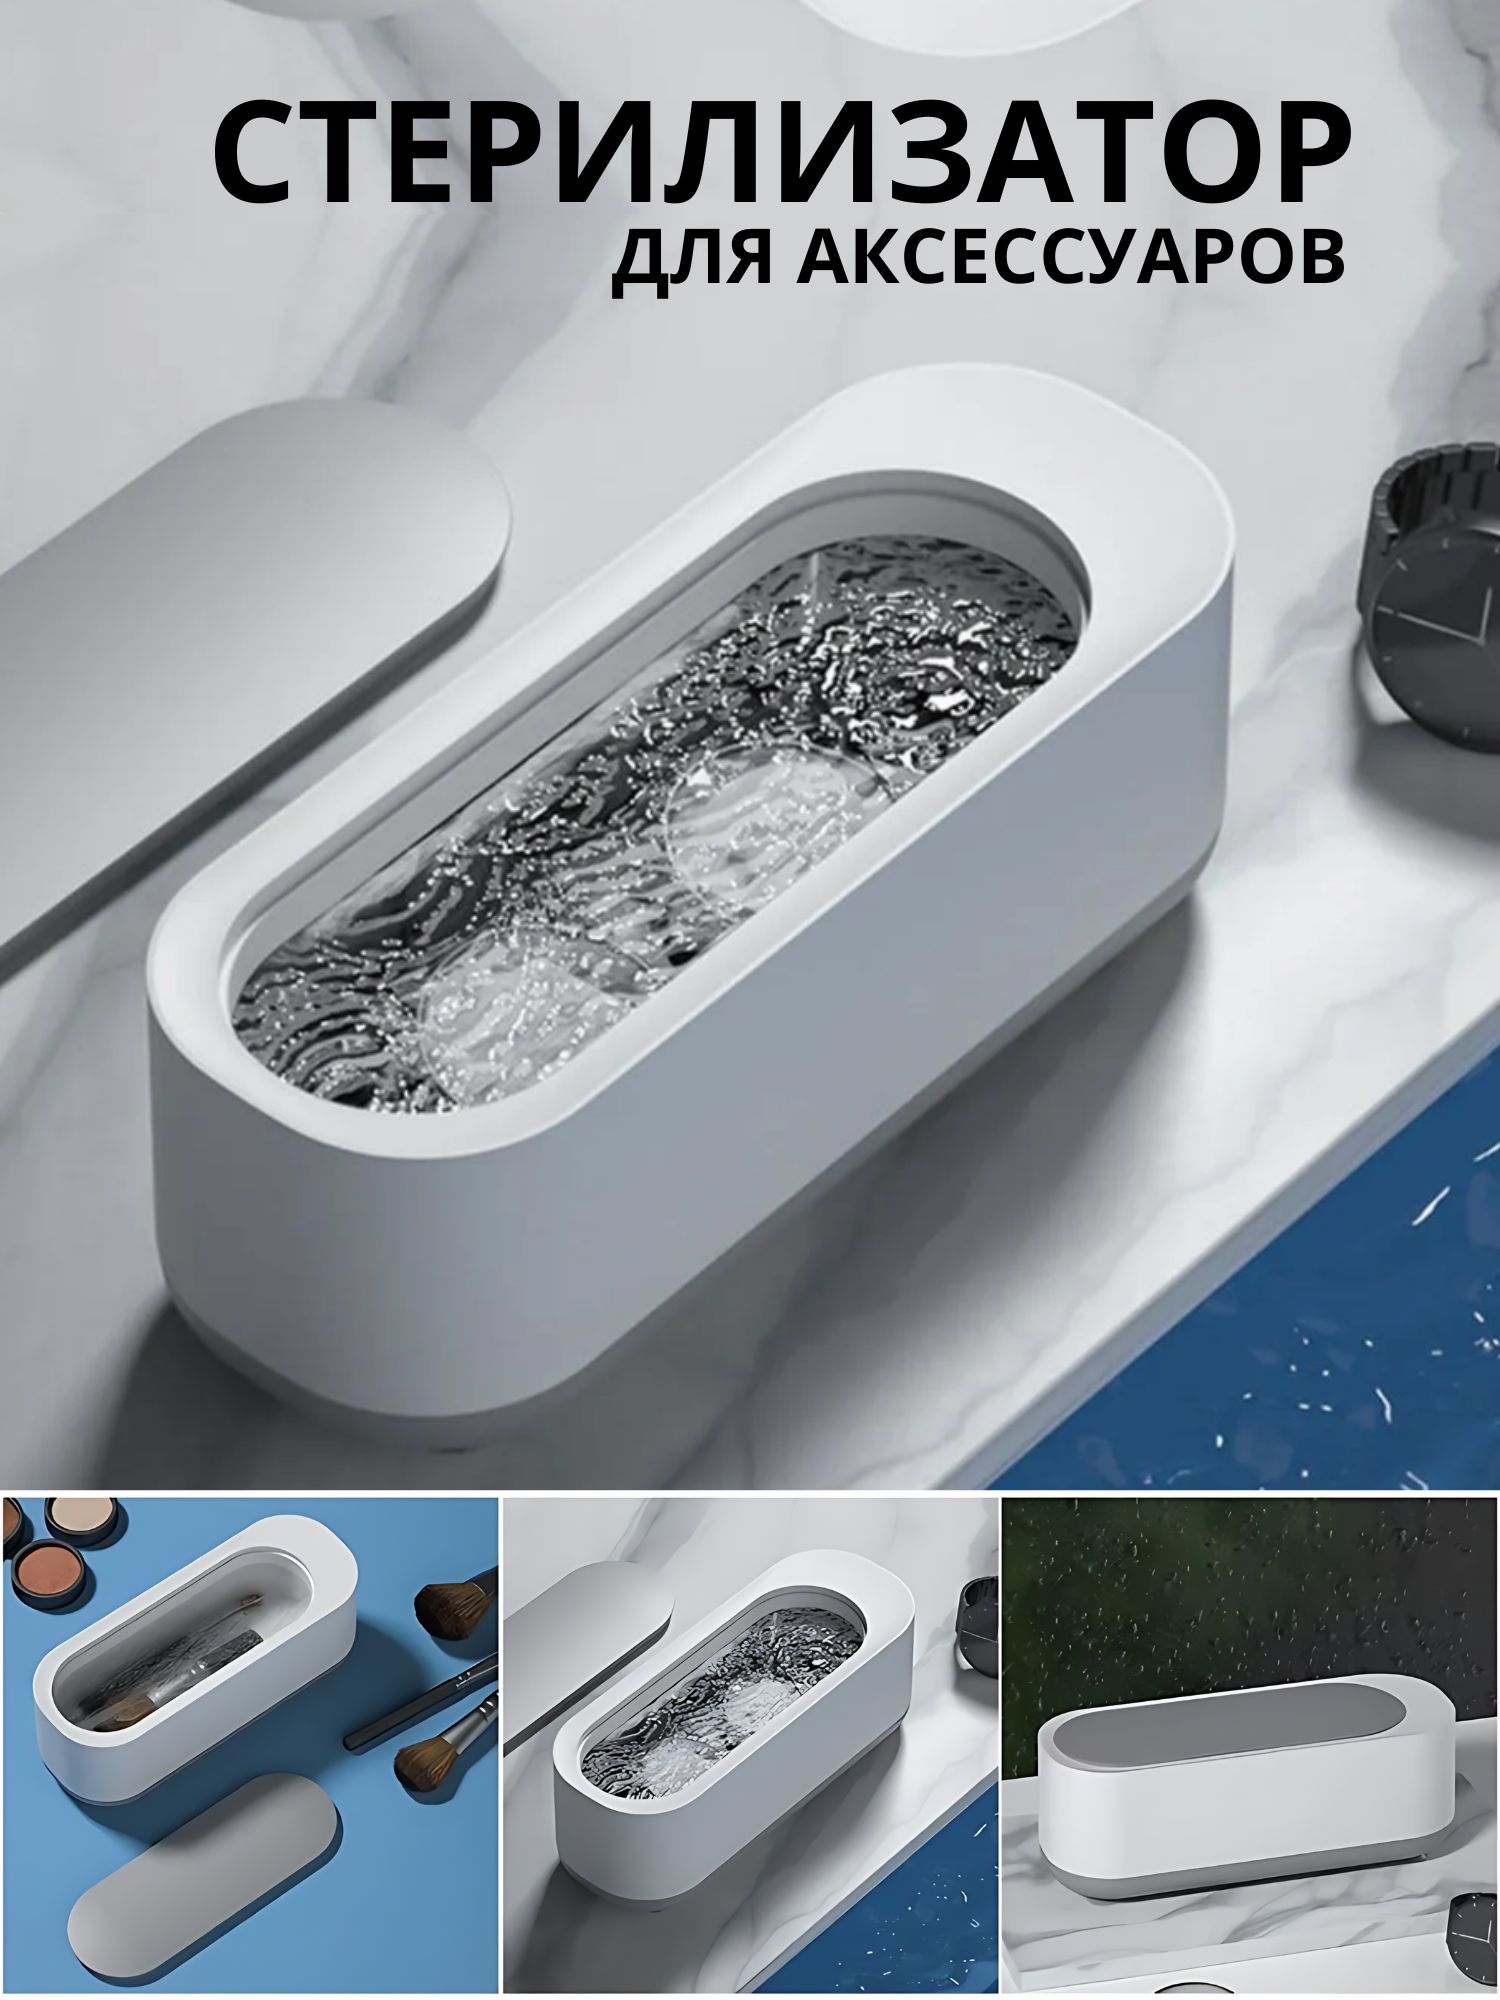 Ультразвуковая ванна для аксессуаров, с крышкой, цвет бело-серый jbl prosilent aeras micro m распылитель воздуха для получения мелких пузырьков с большой поверхностью распыления